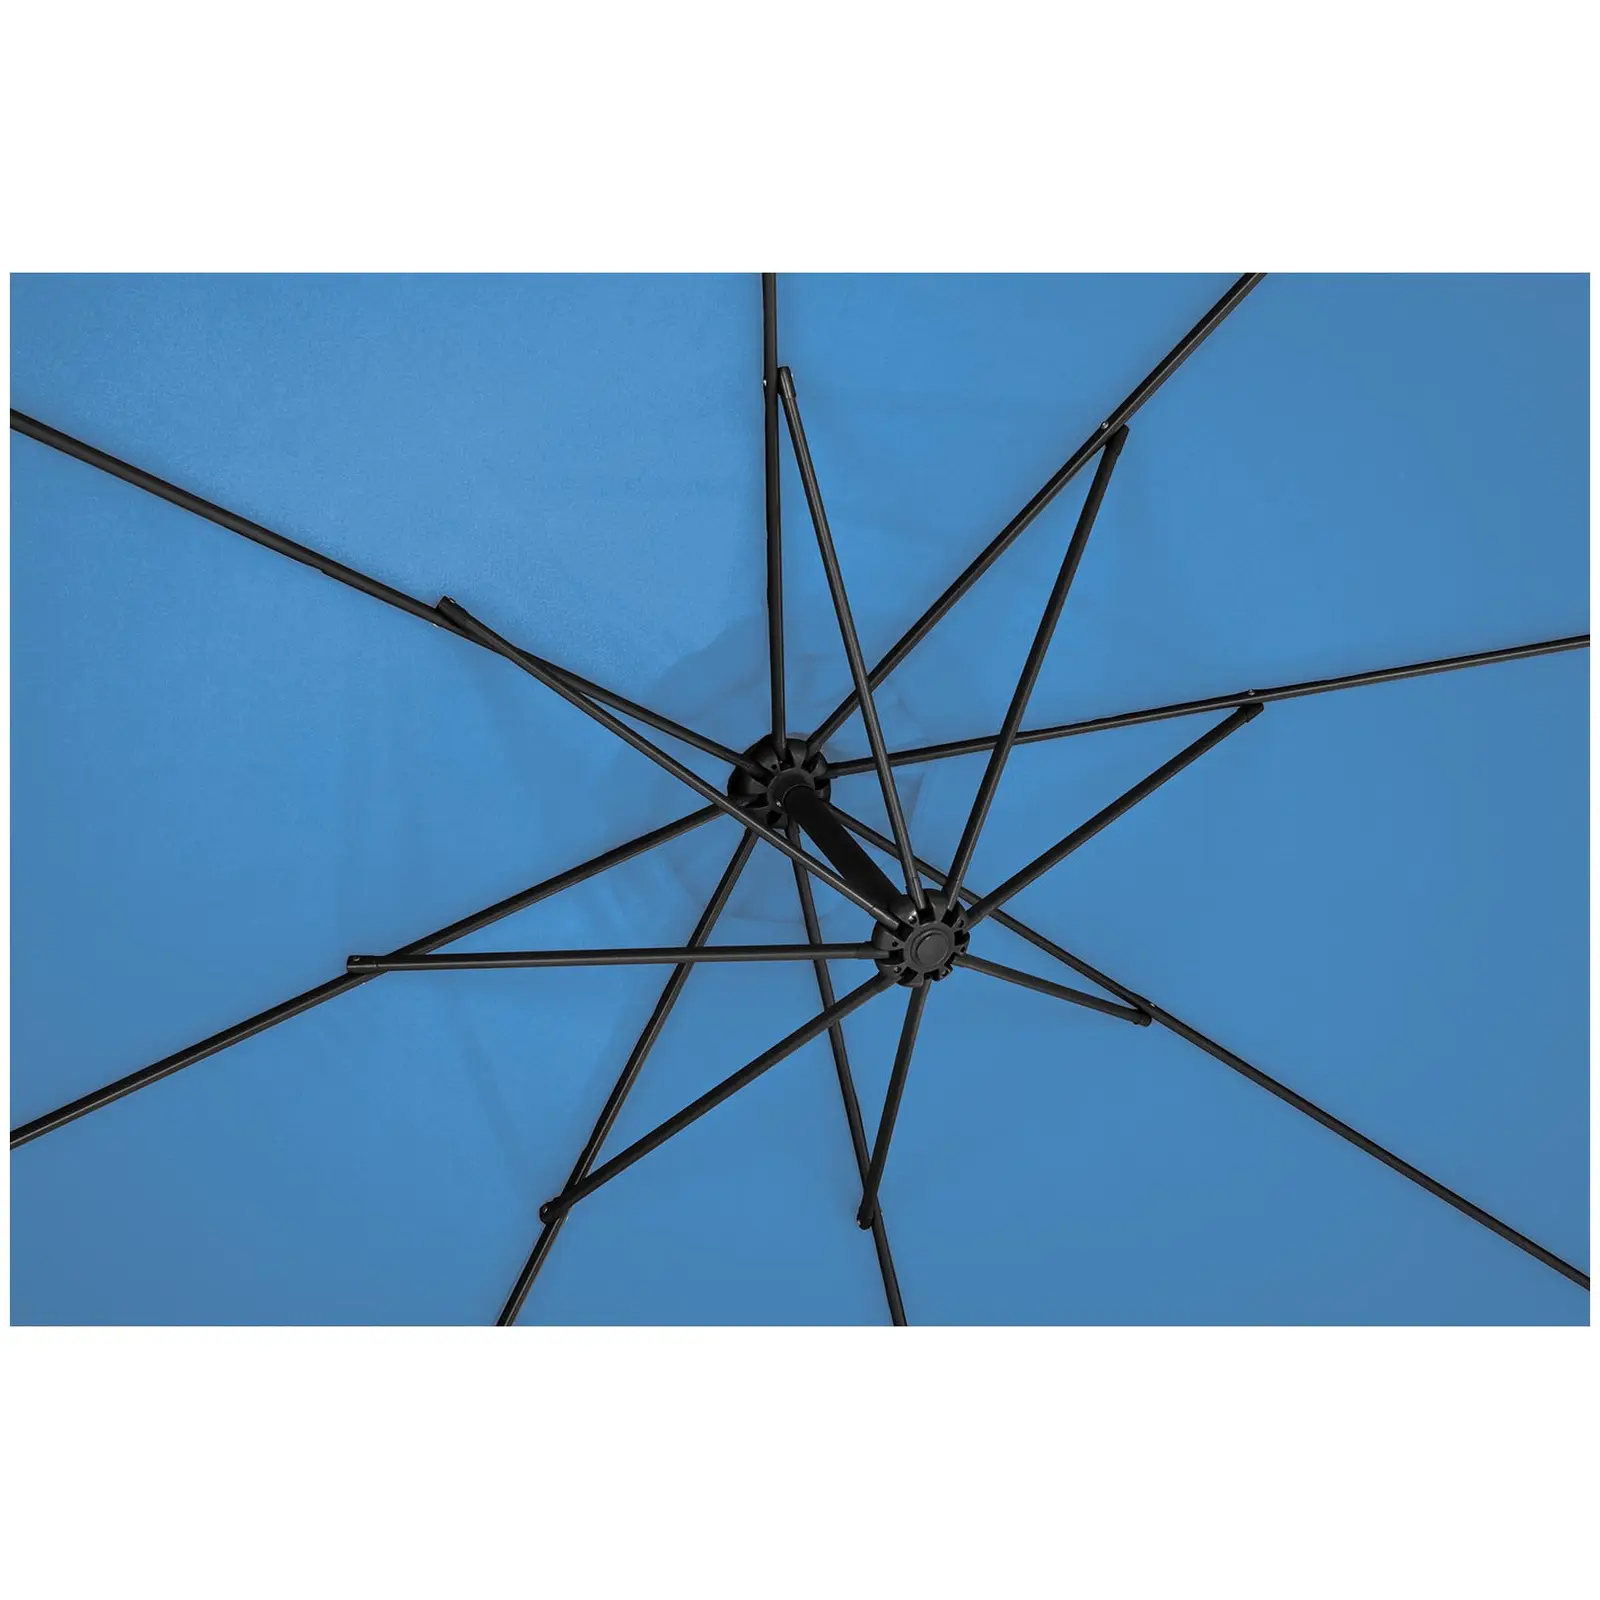 Hængeparasol - blå - rund - 300 cm i diameter